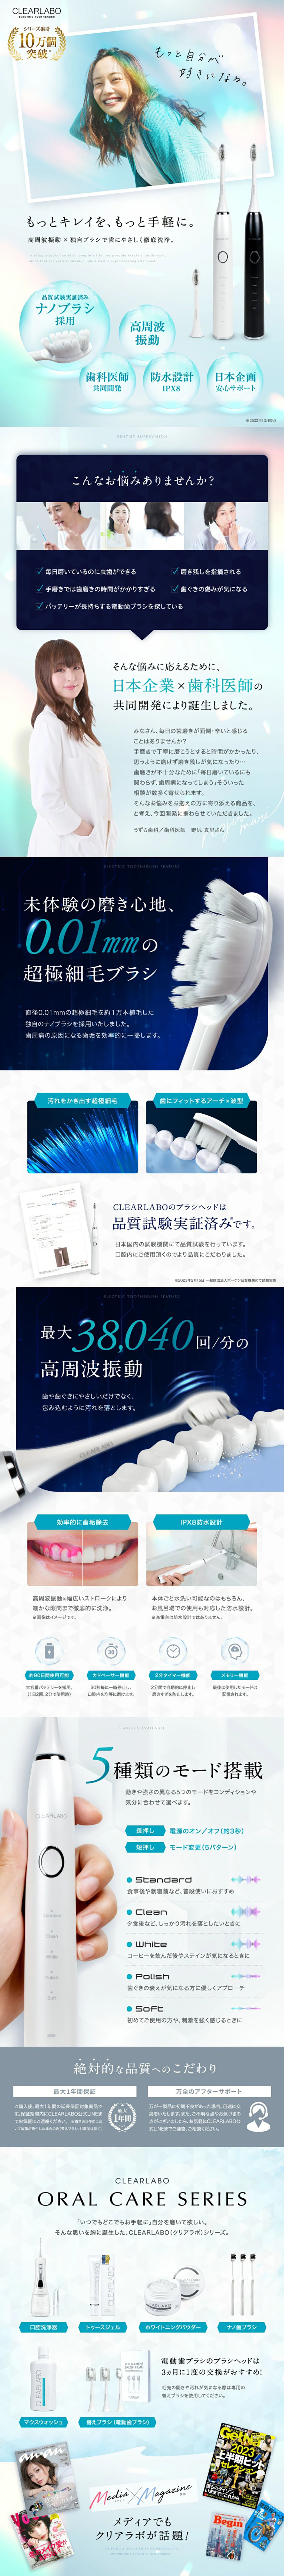 CLEARLABO 電動歯ブラシ_pc_1